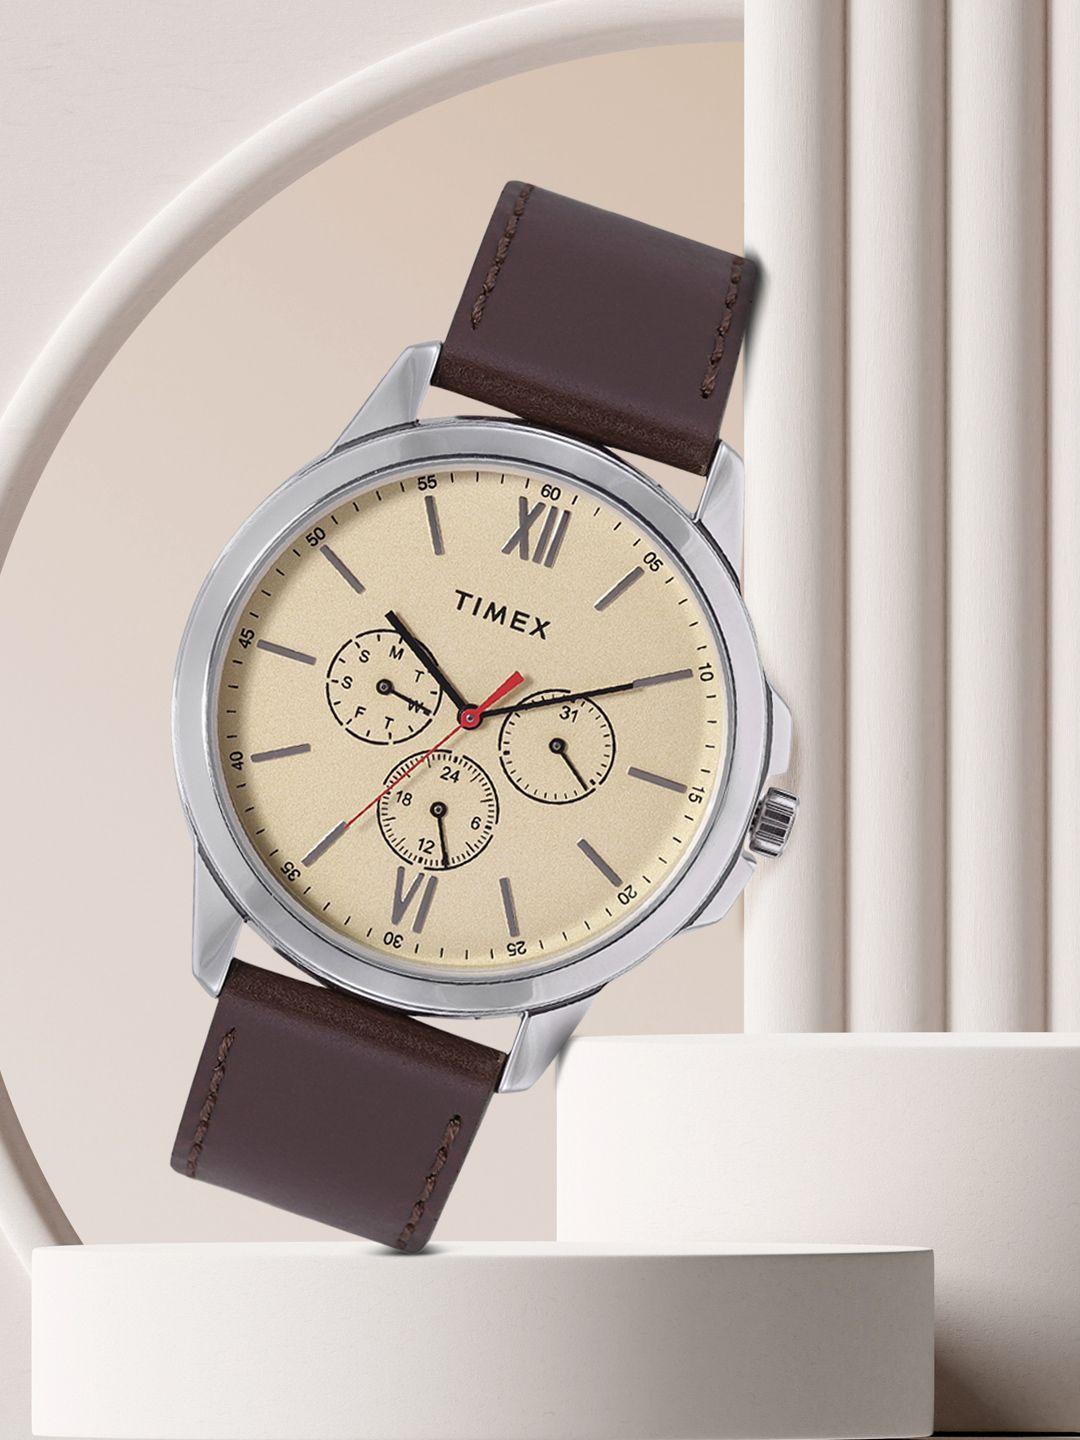 timex men beige brass dial & brown leather straps analogue watch tweg165smu01